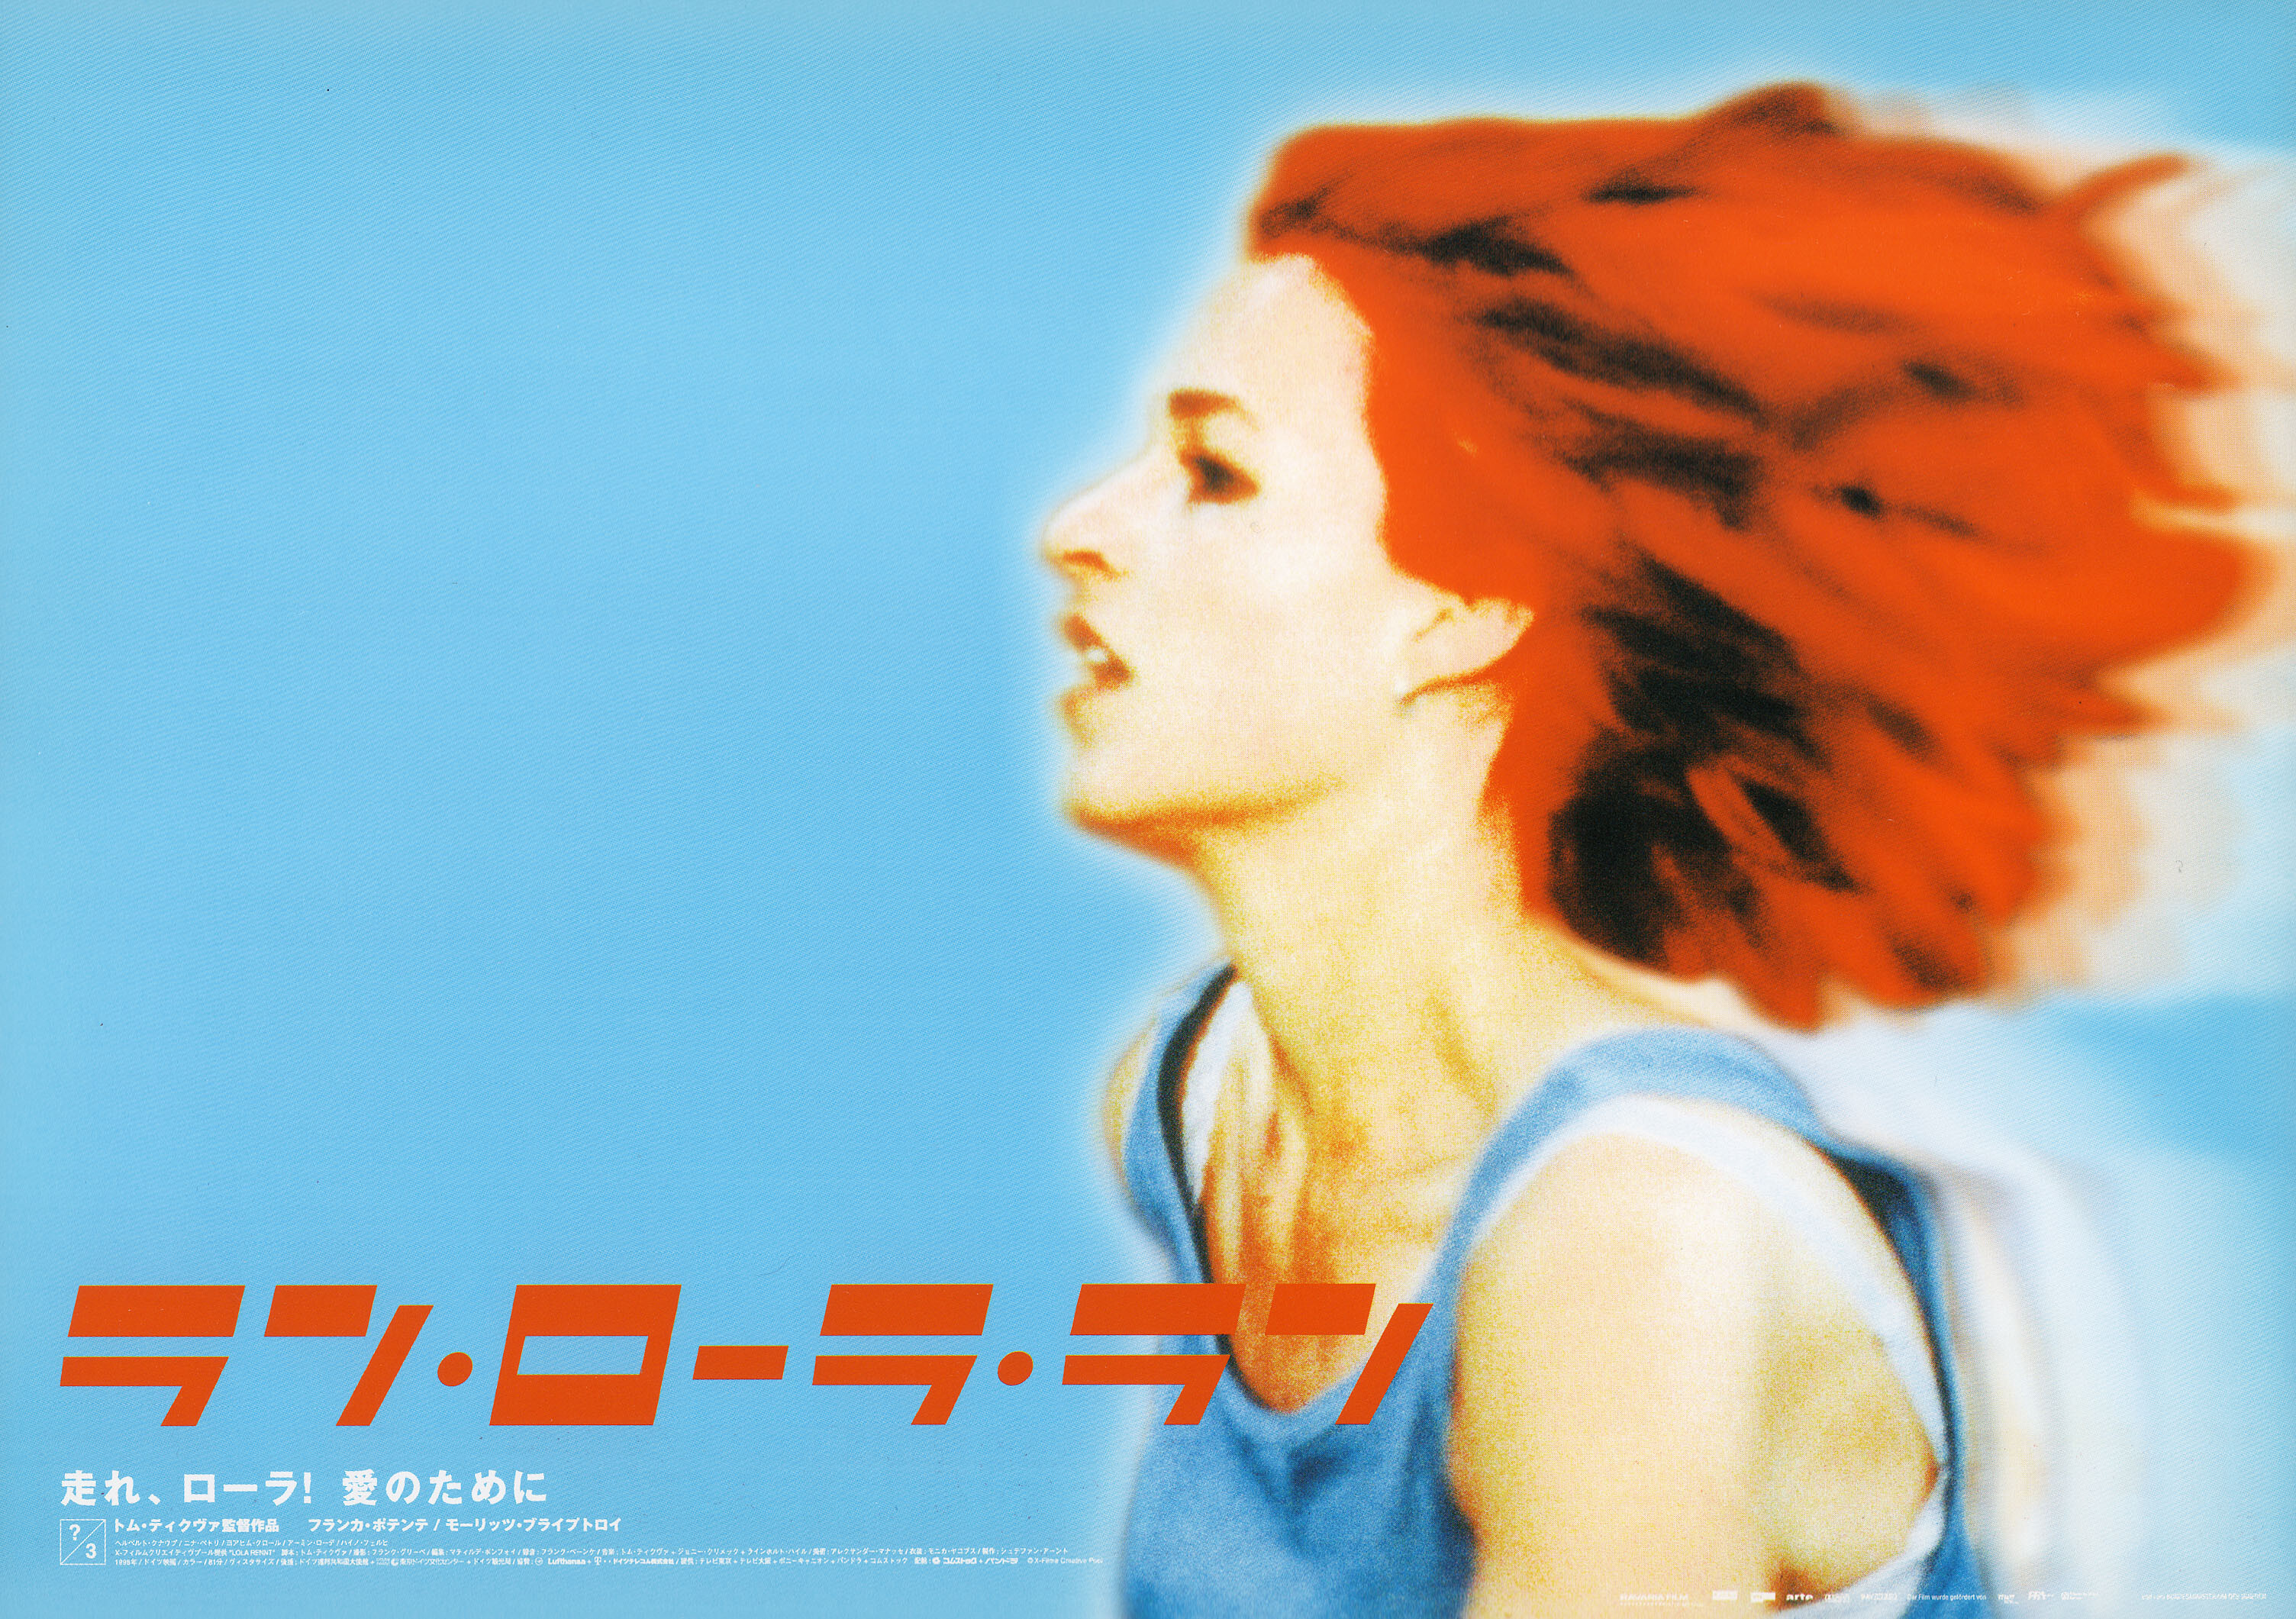 Беги, Лола, беги (Run Lola Run, 1998), режиссёр Том Тыквер, минималистичный постер к фильму (Япония, 1999 год)